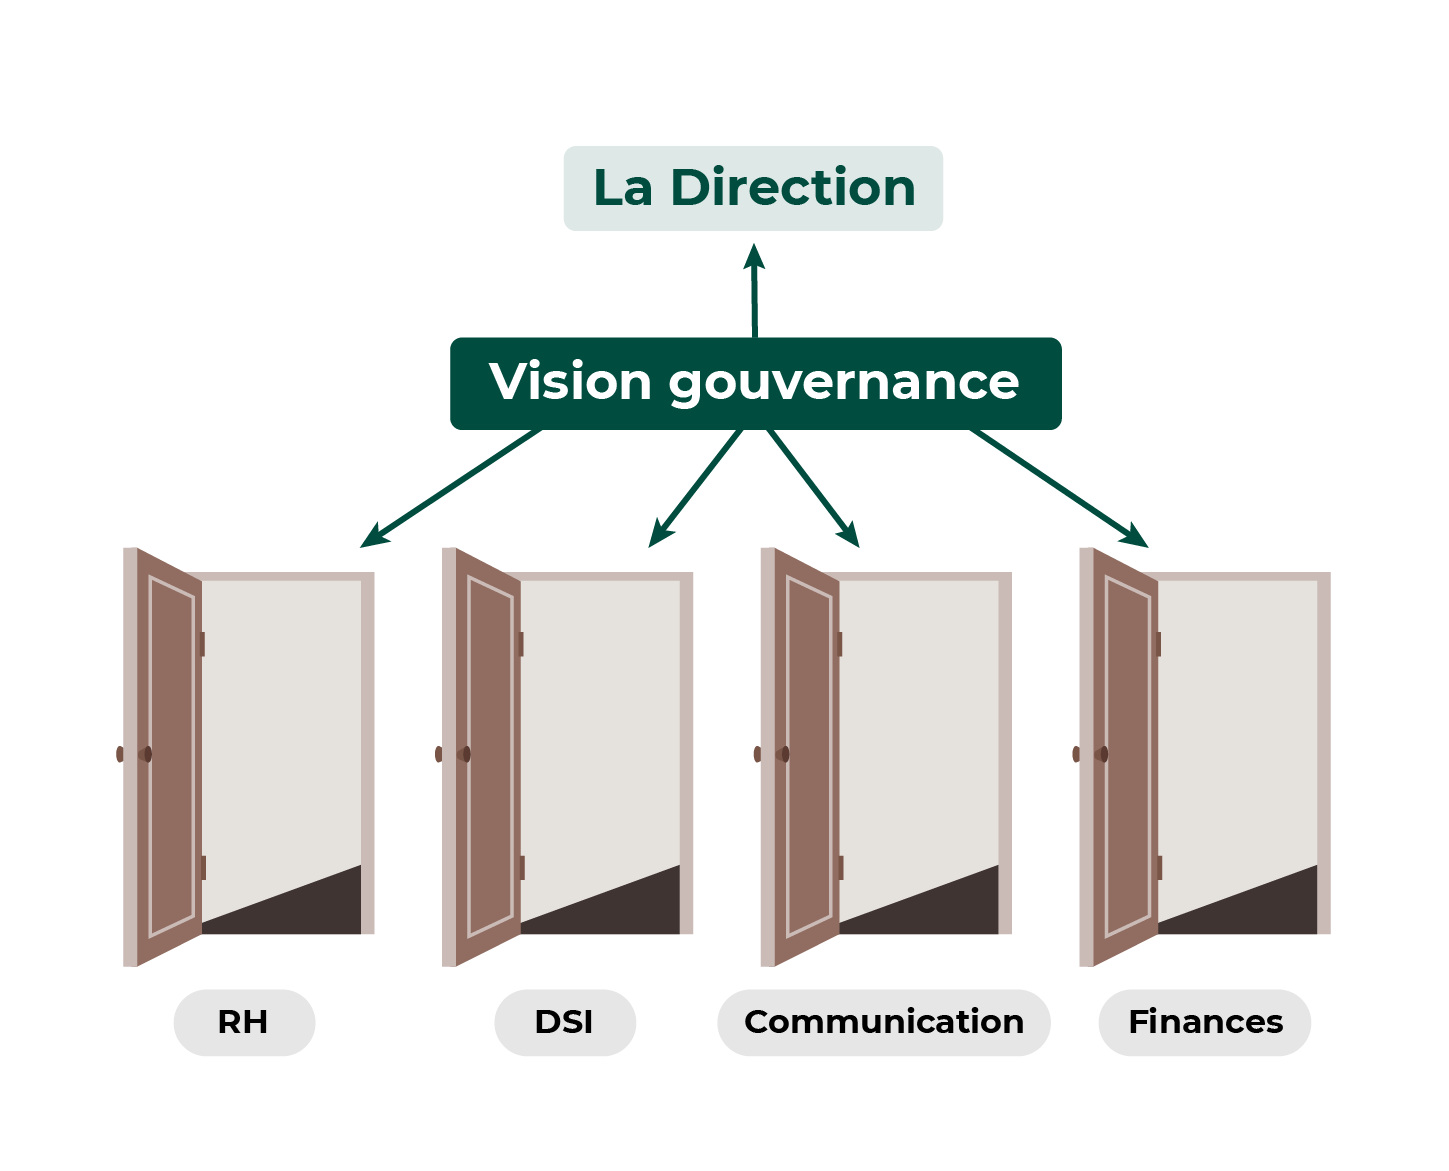 La Vision gouvernance connecte la Direction et les services RH, DSI, Communication, Finances, représentés par des portes ouvertes.